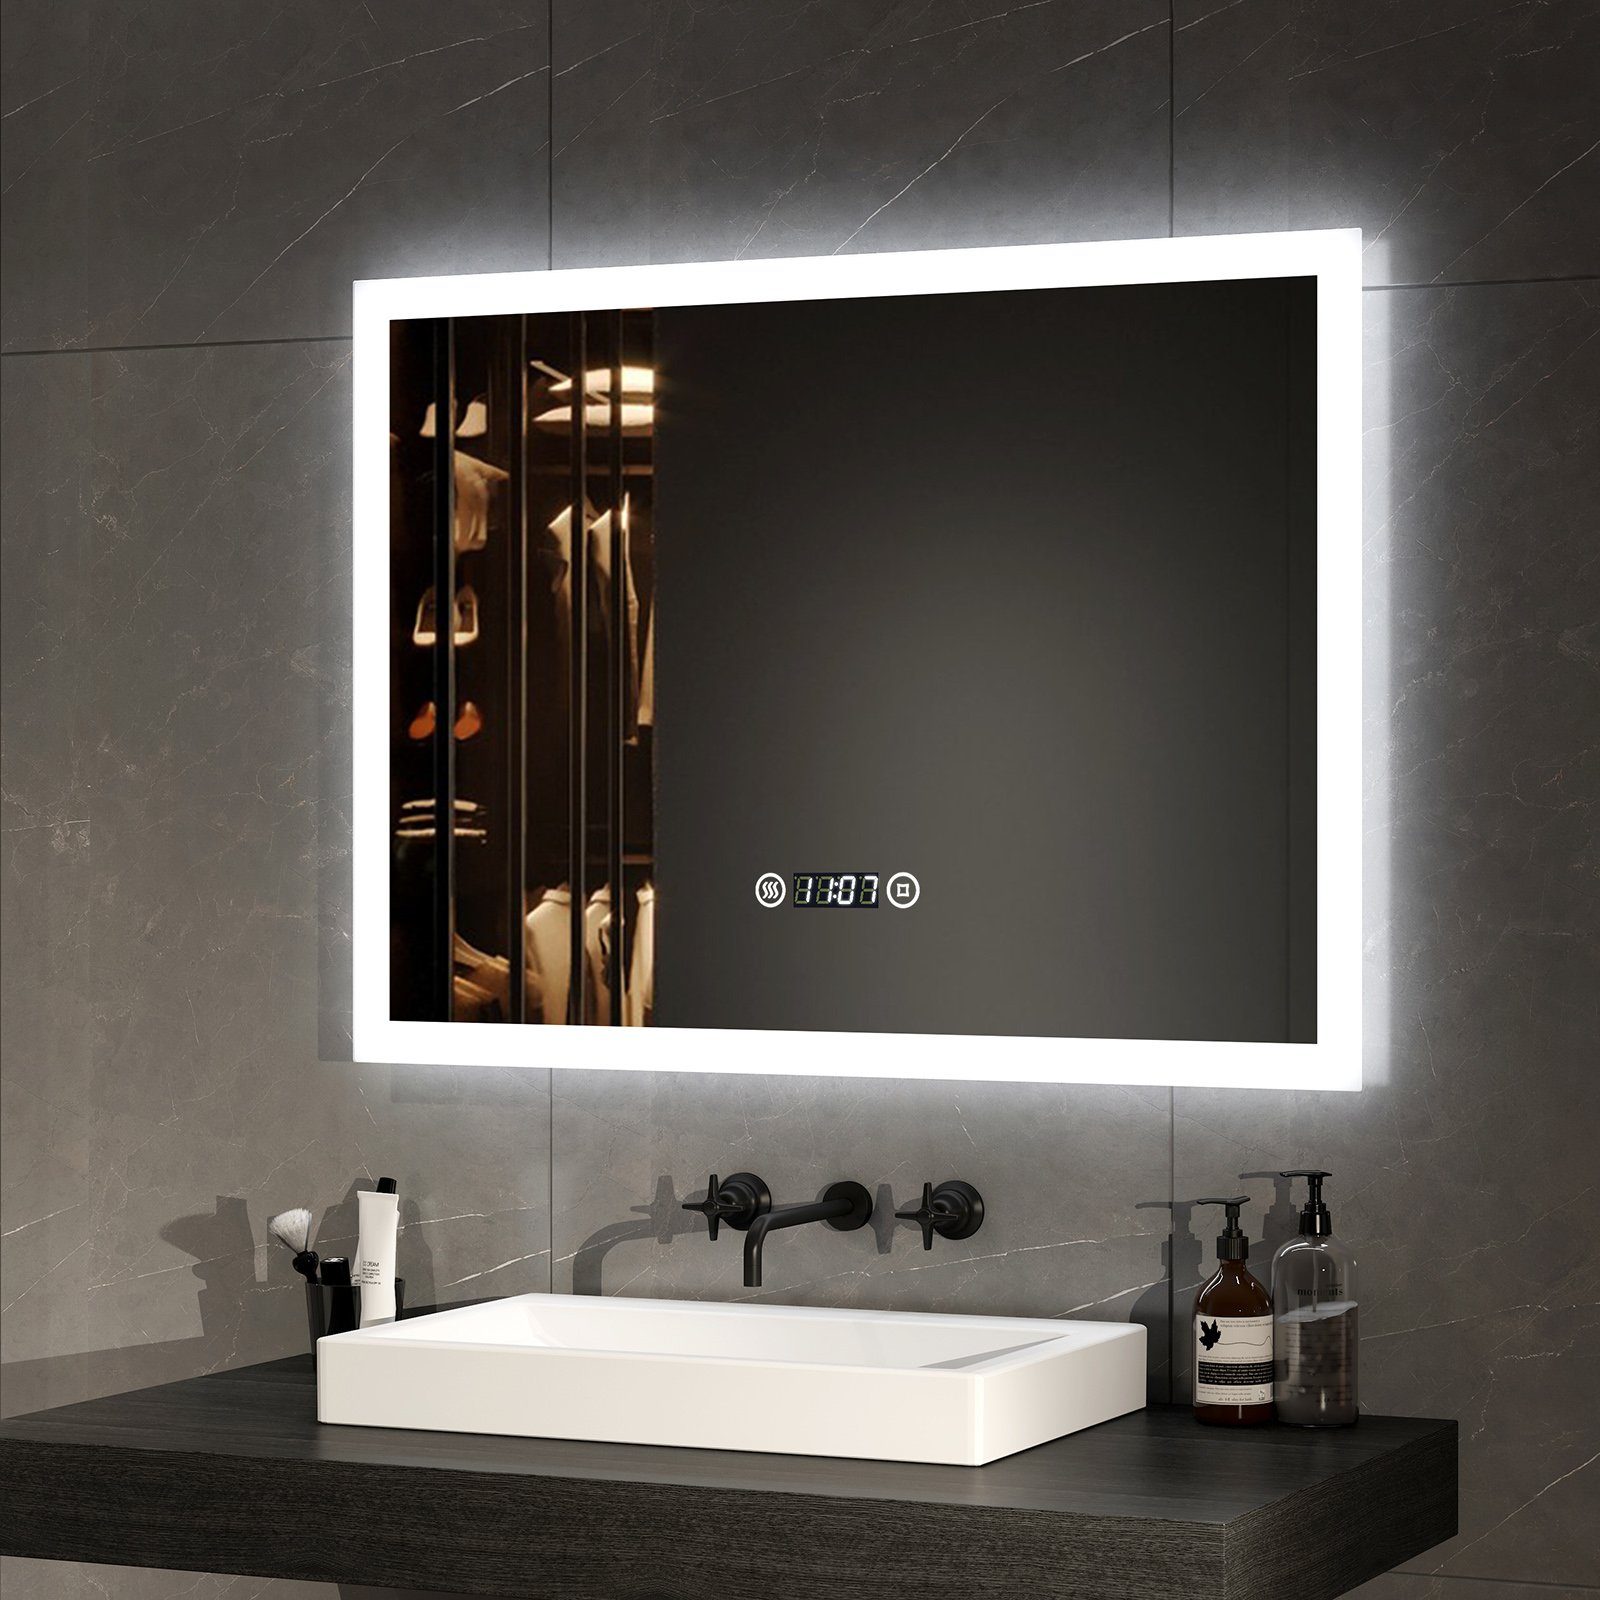 EMKE Badspiegel mit Beleuchtung Badezimmerspiegel Wandspiegel (Touchschalter), Kaltweiß Licht Beschlagfrei Uhr